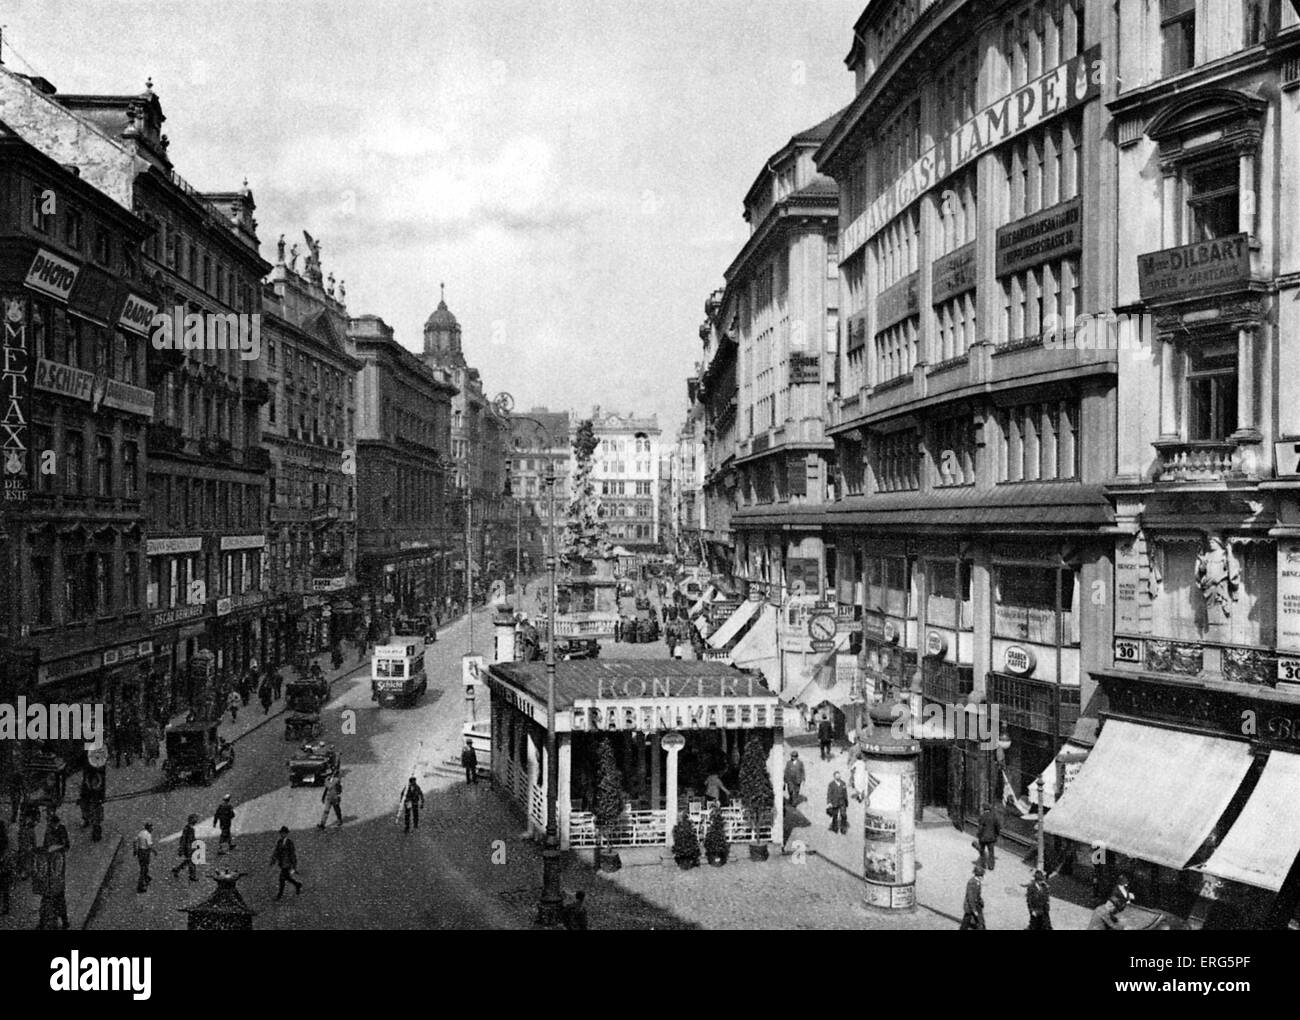 Der Graben, Vienna, Austria, 1920s. Strada principale nel primo distretto di Vienna (letteralmente "trench"). Scena di strada. Foto Stock